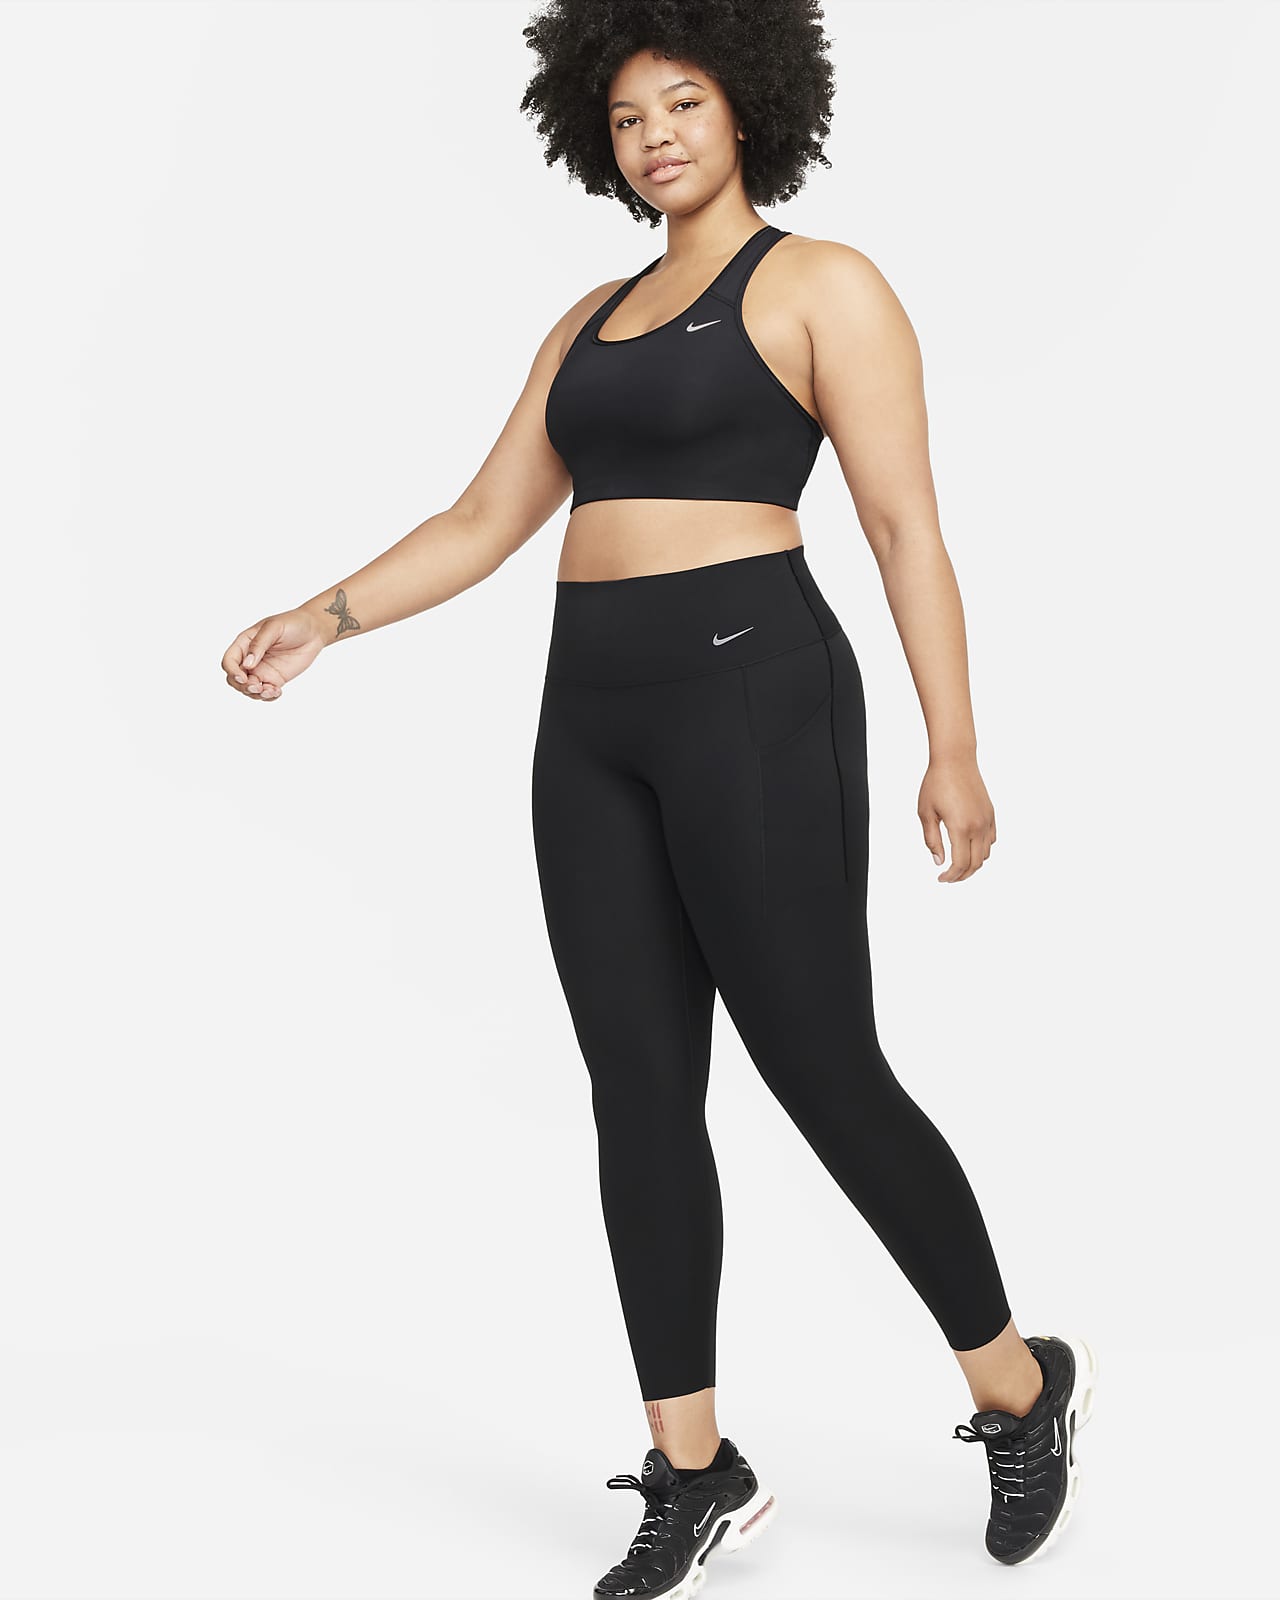 Nike Universa-leggings i 7/8 længde med medium støtte, høj talje og lommer til kvinder